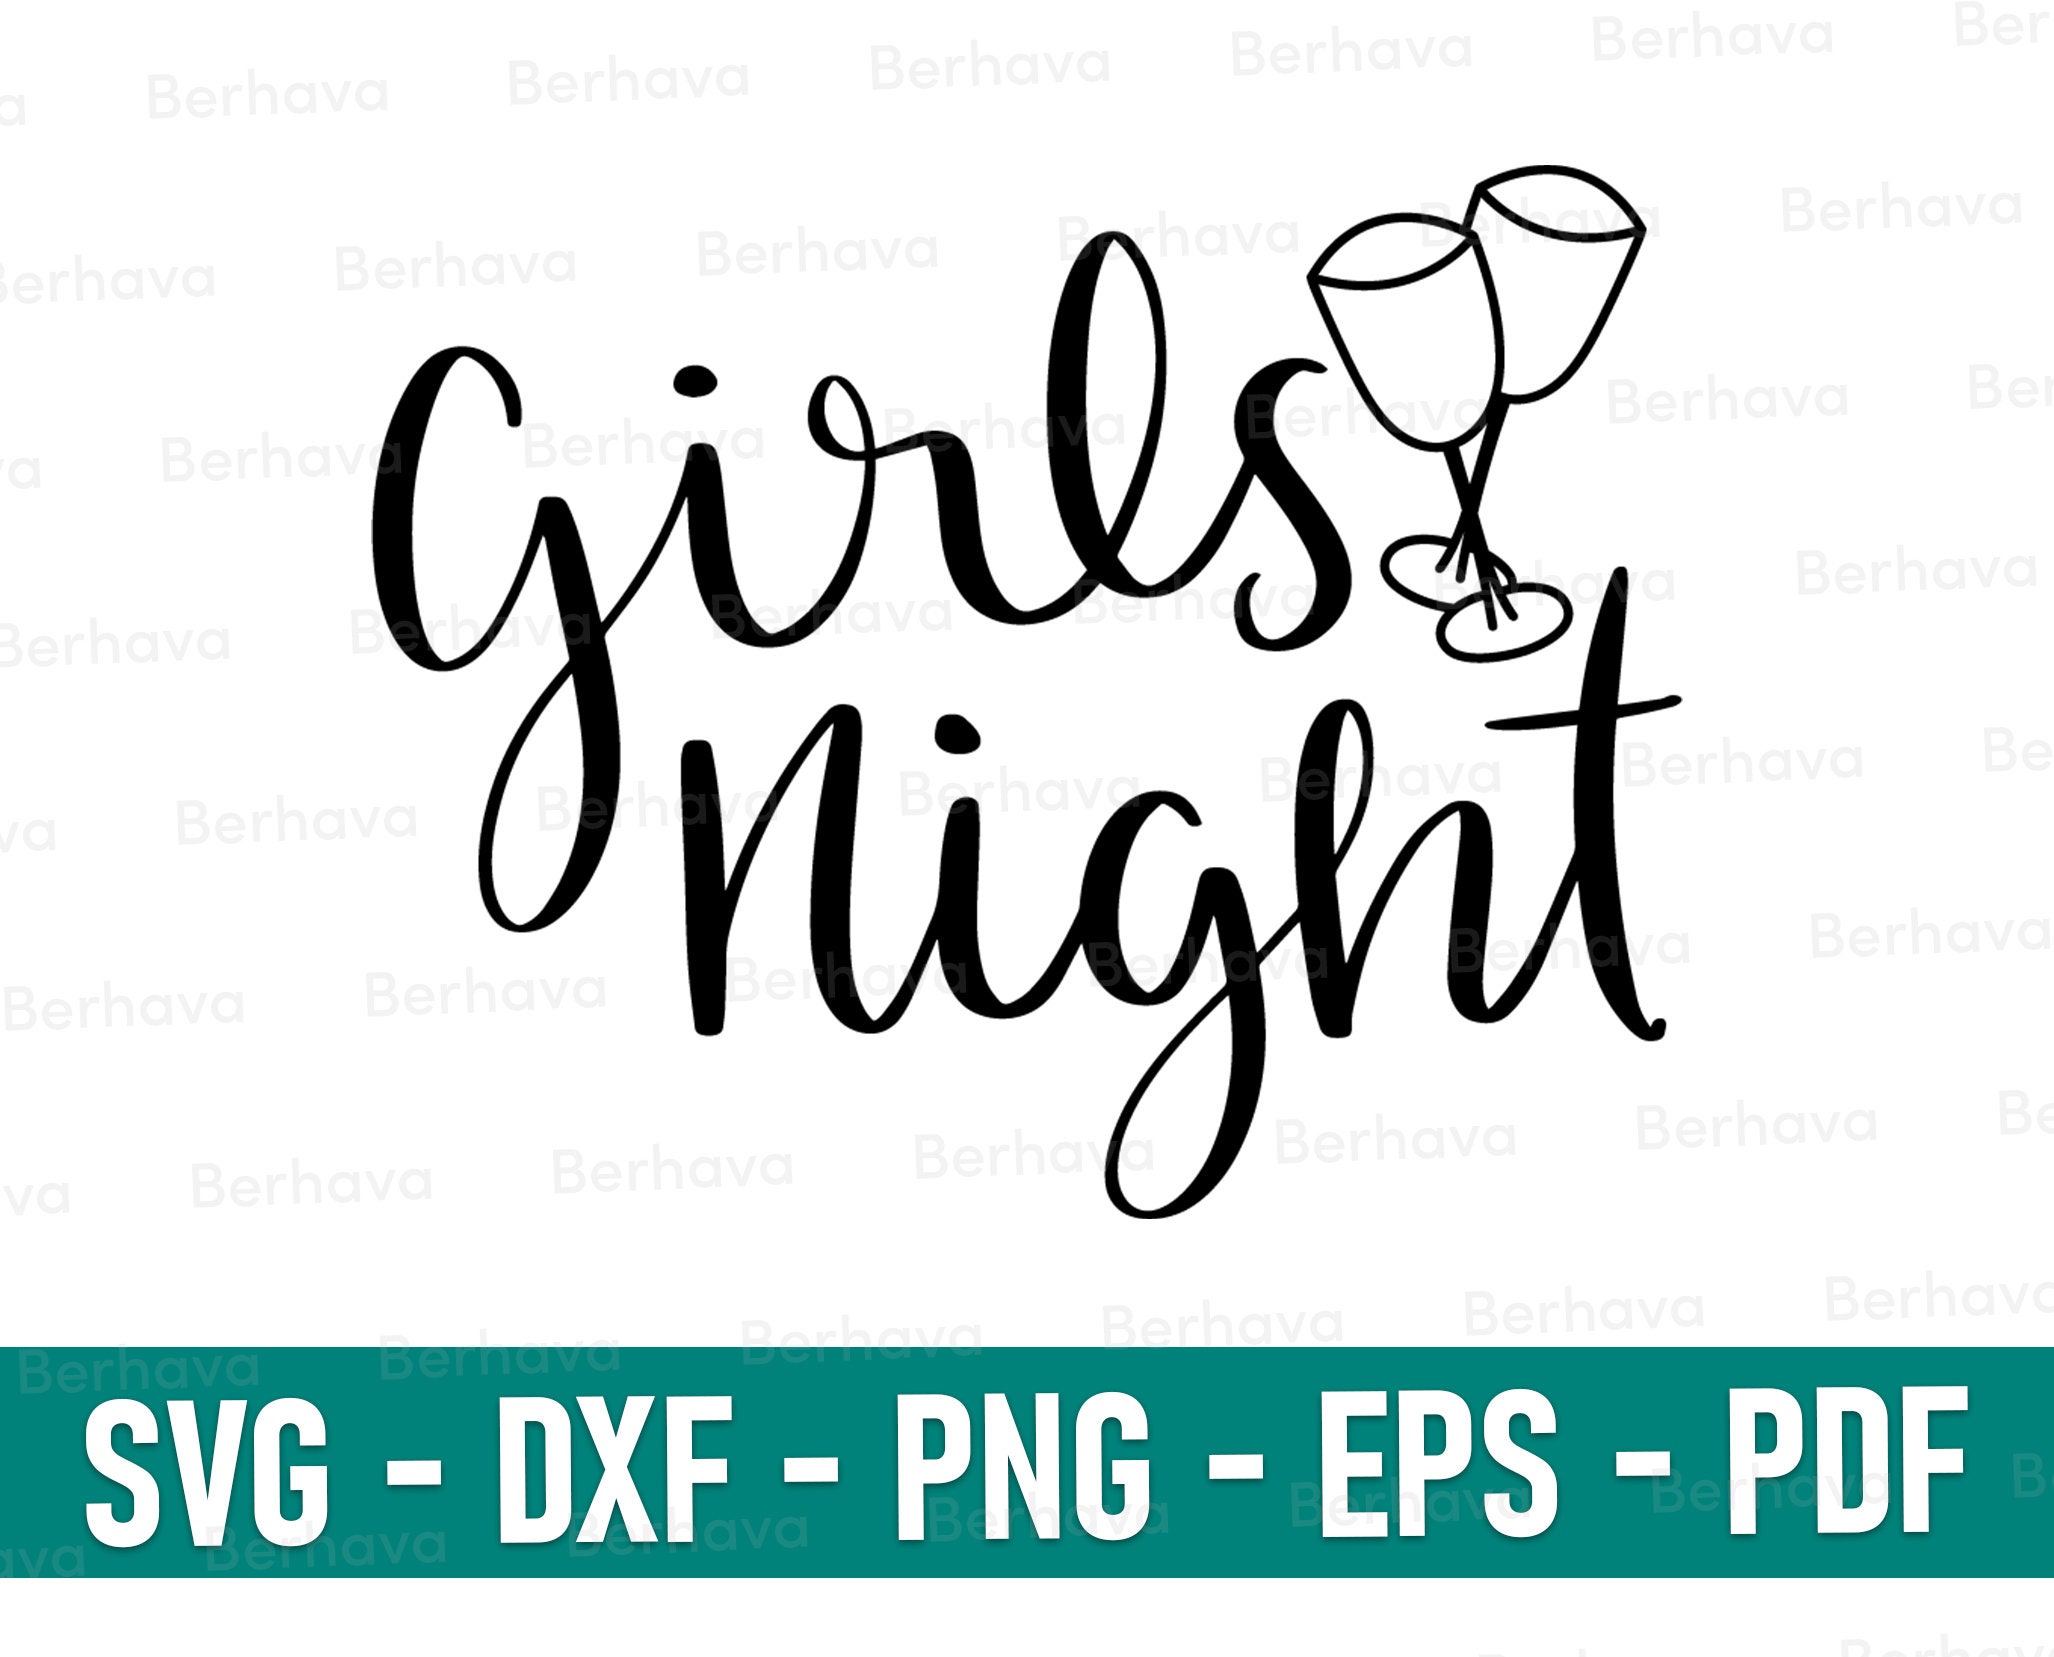 Girls Night Svg, Girls Night Cricut,girls Night Png, Girls Night Vector  Clipart, Girls Night Silhouette,girls Night Cut, Girls Night Print -   Canada